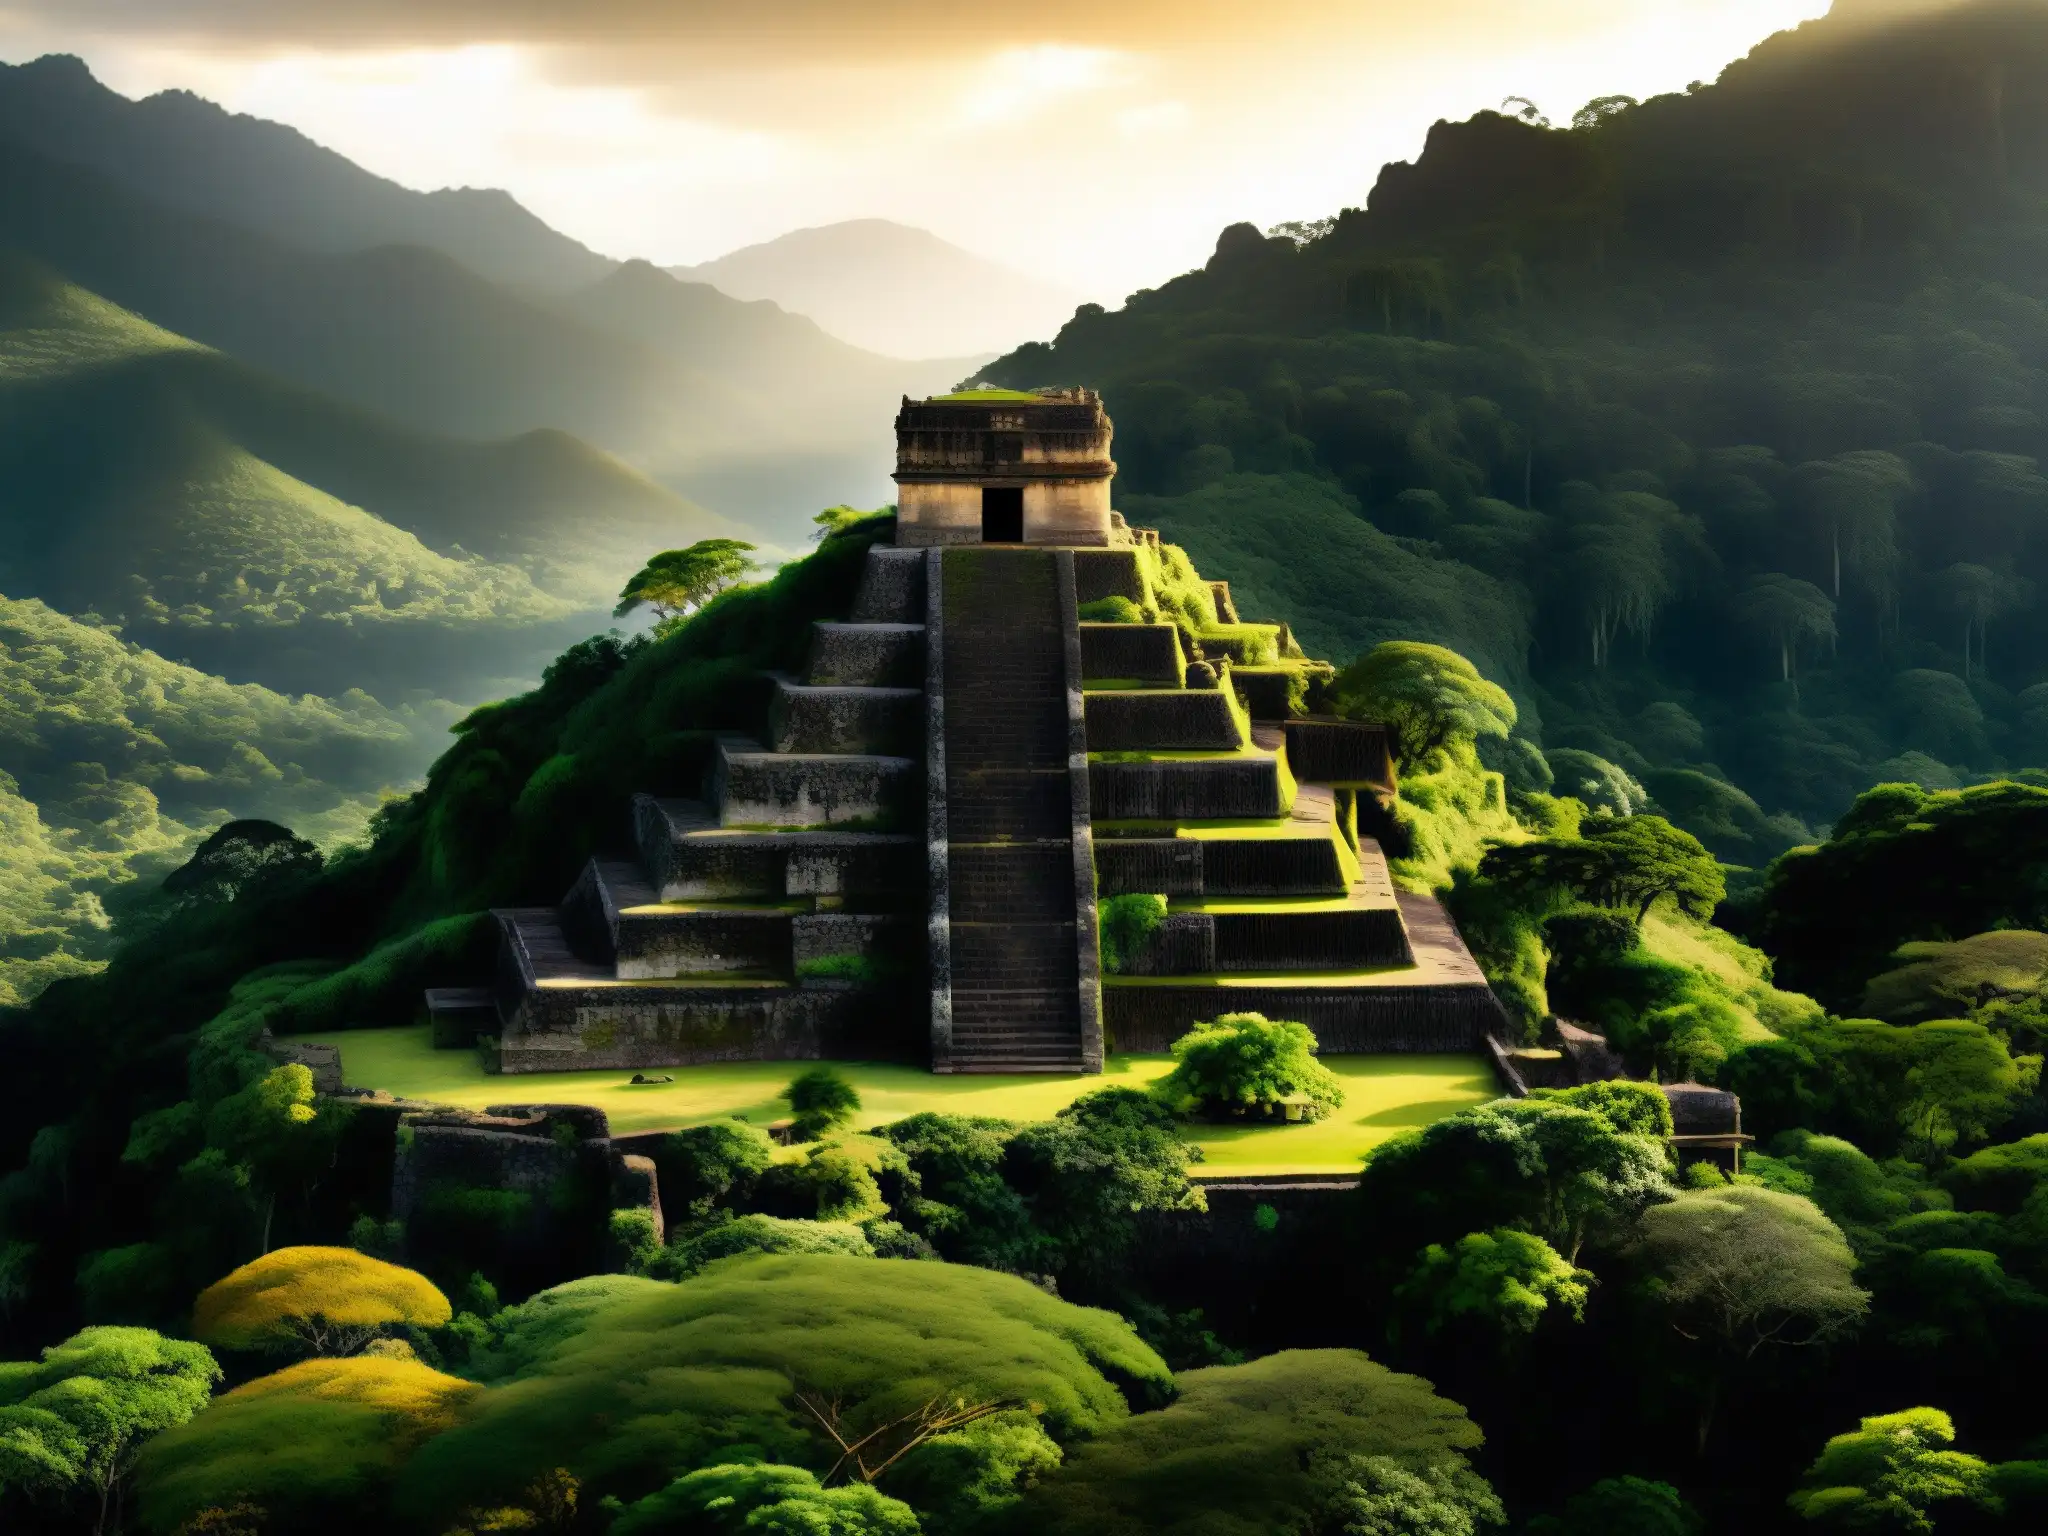 Explorando la selva mexicana en busca del tesoro de Moctezuma, un templo azteca escondido entre la exuberante vegetación y la luz dorada